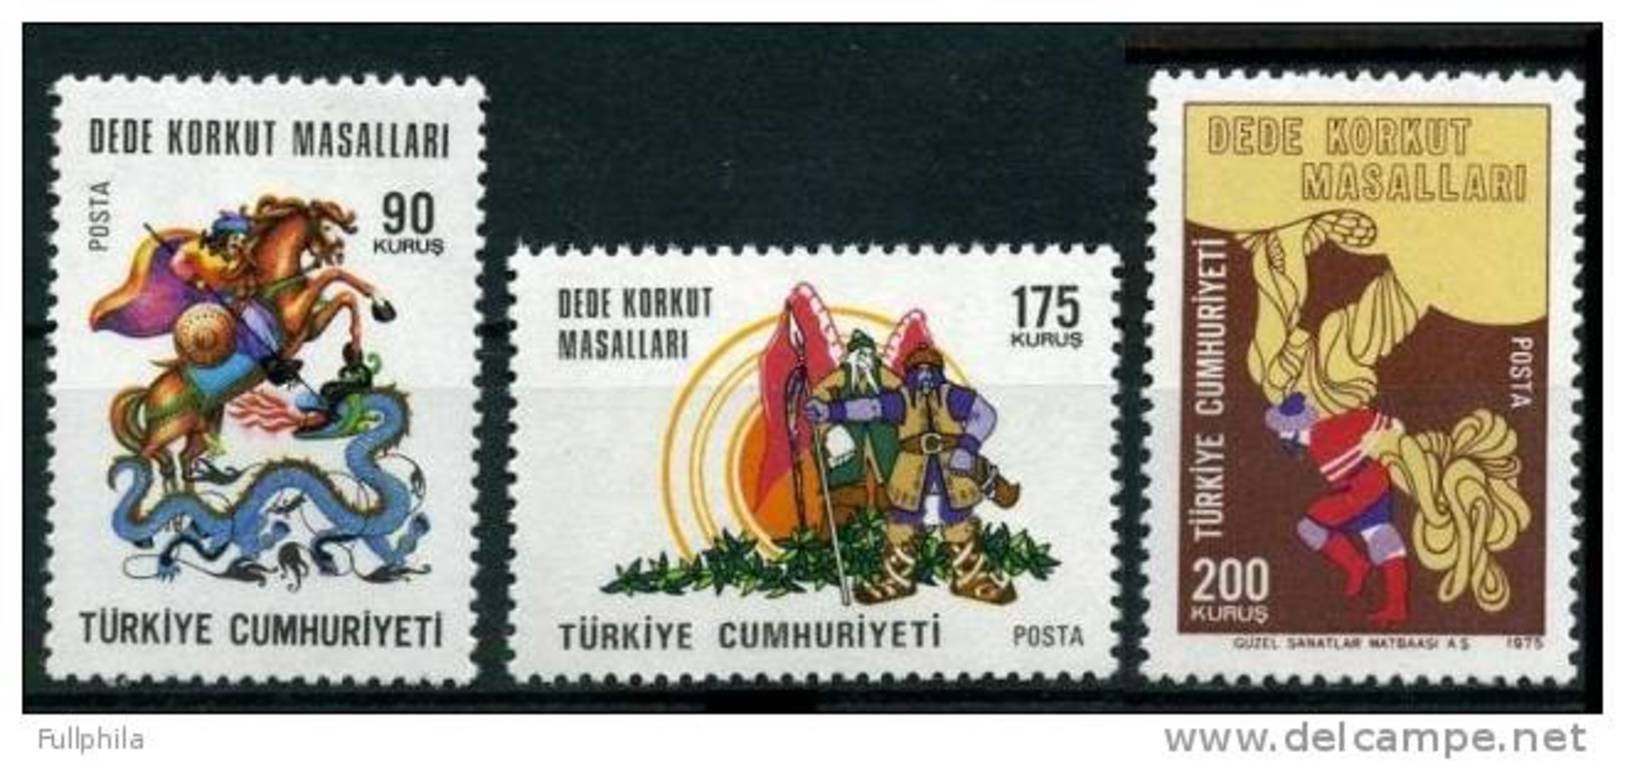 1975 TURKEY TALES OF DEDE KORKUT MNH ** - Neufs